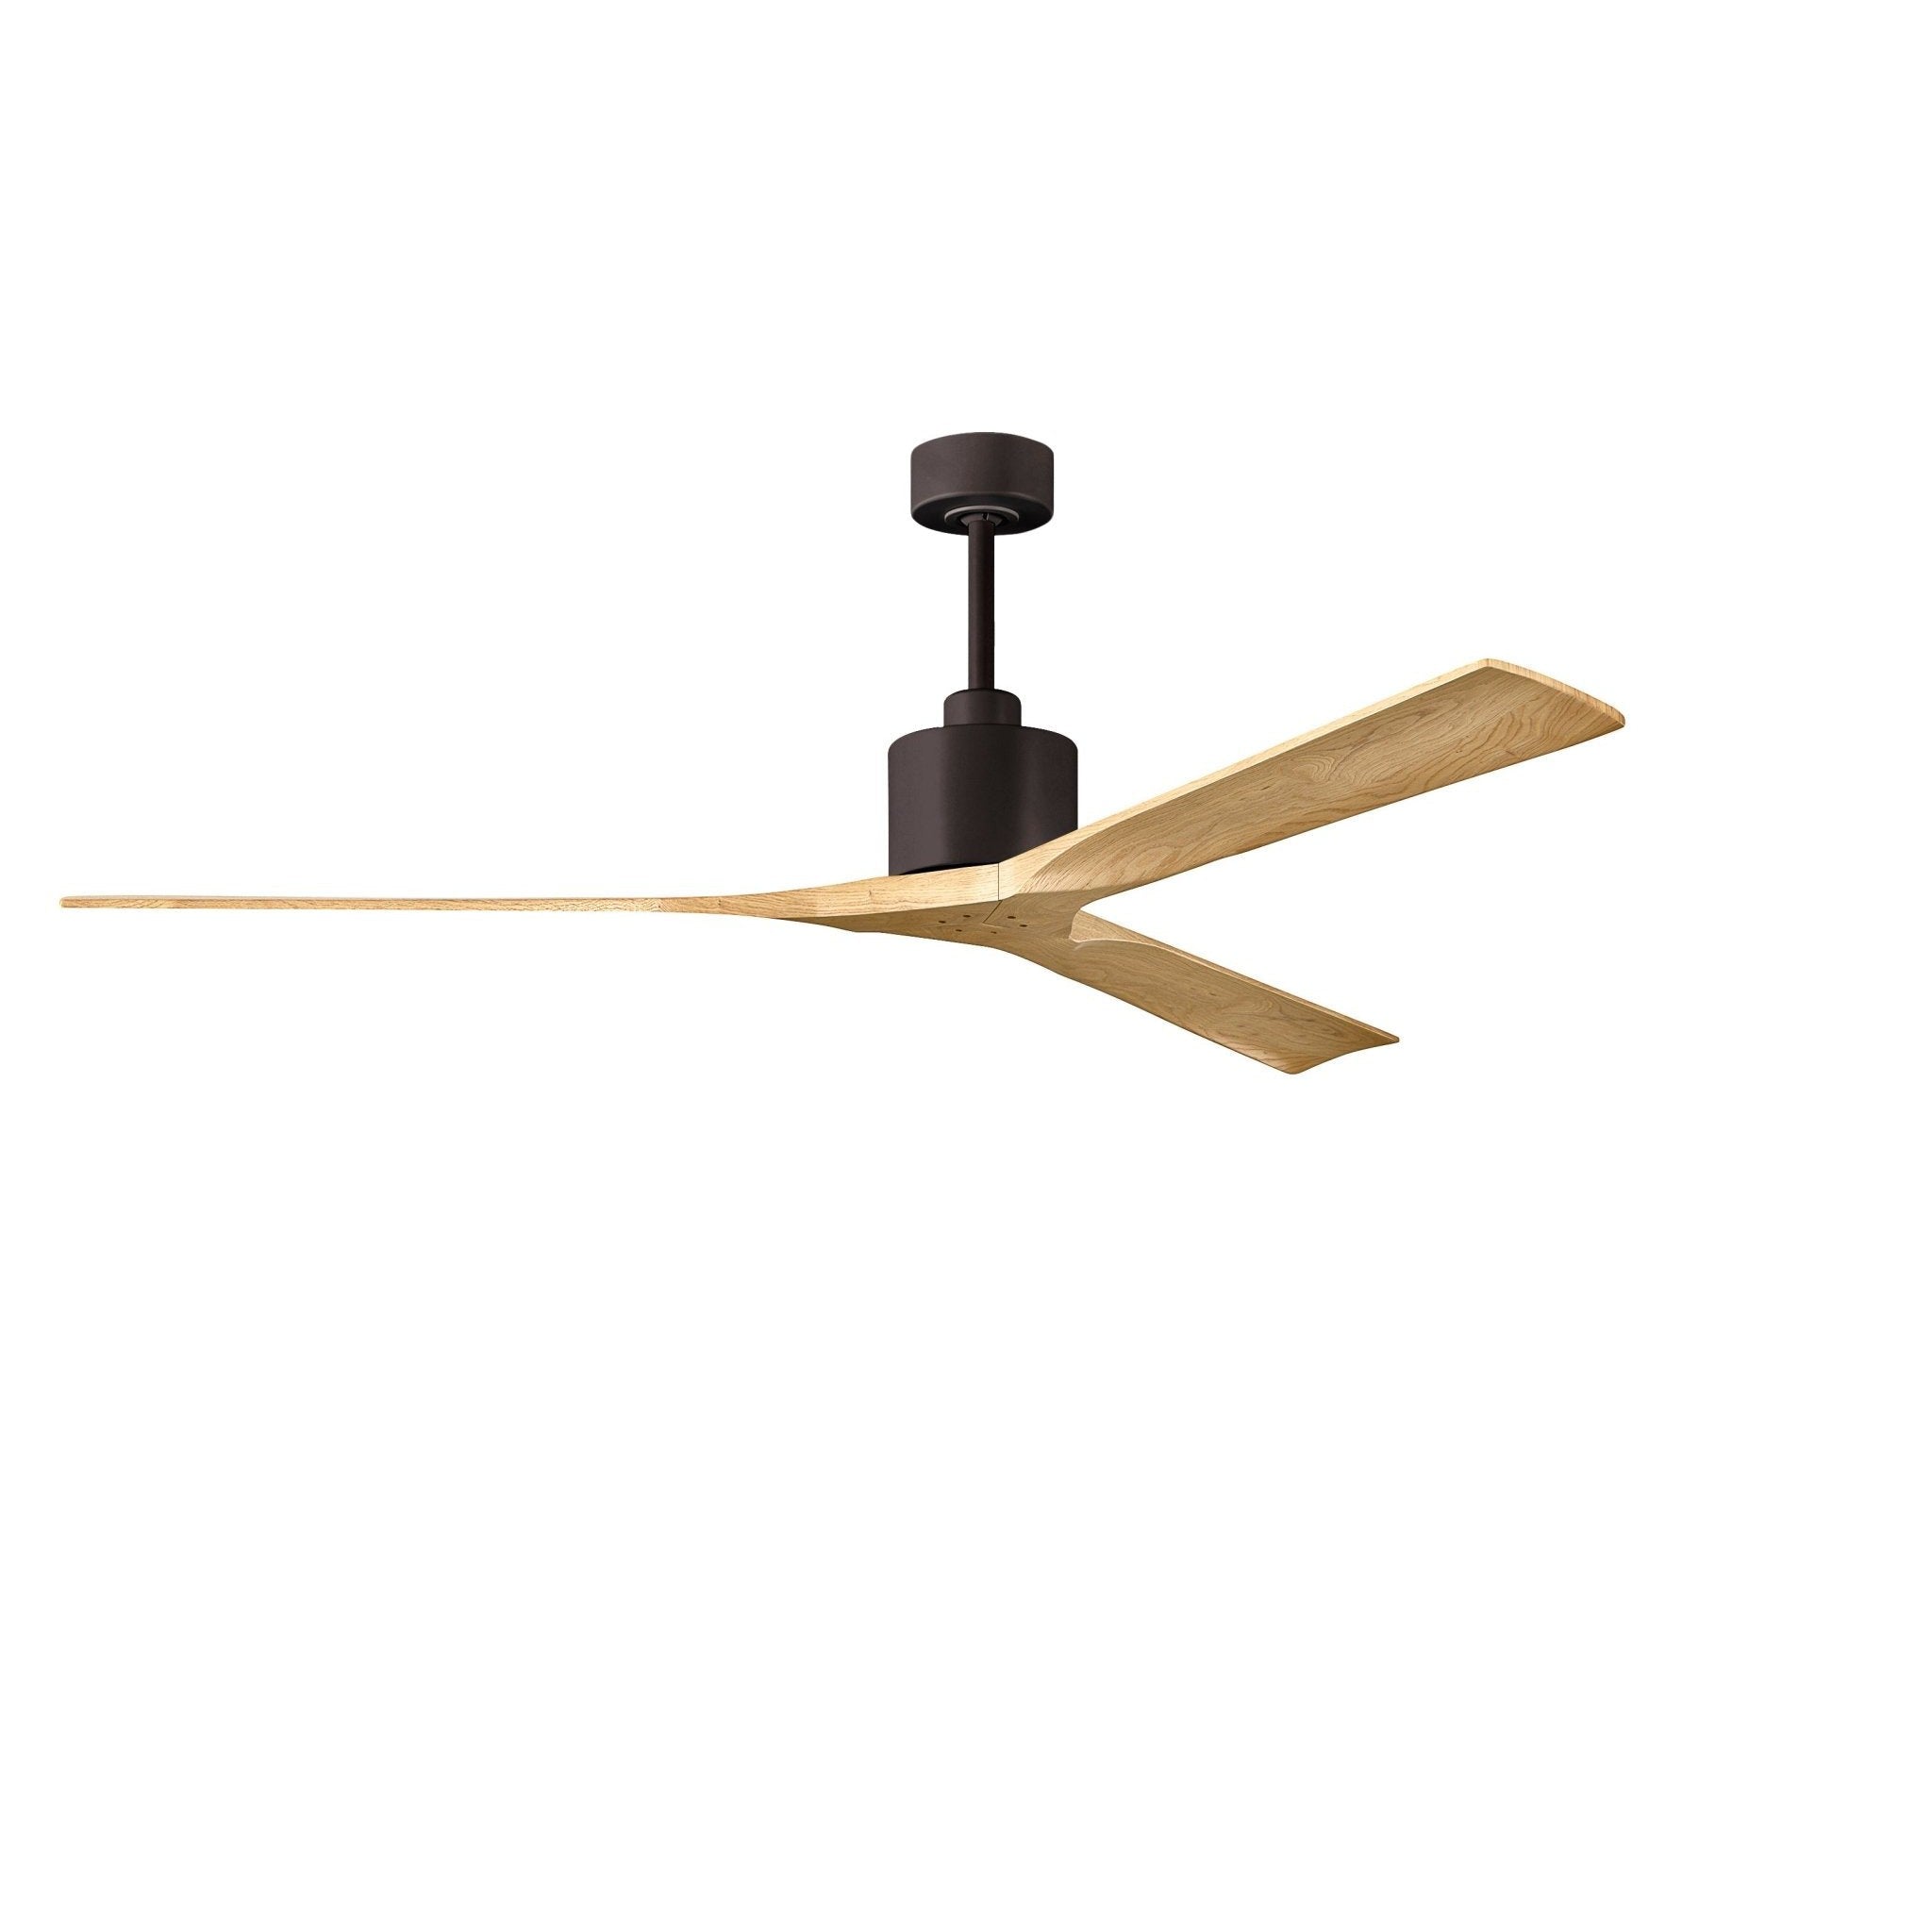 Nan XL 6-Speed Ceiling Fan in Wood Blades